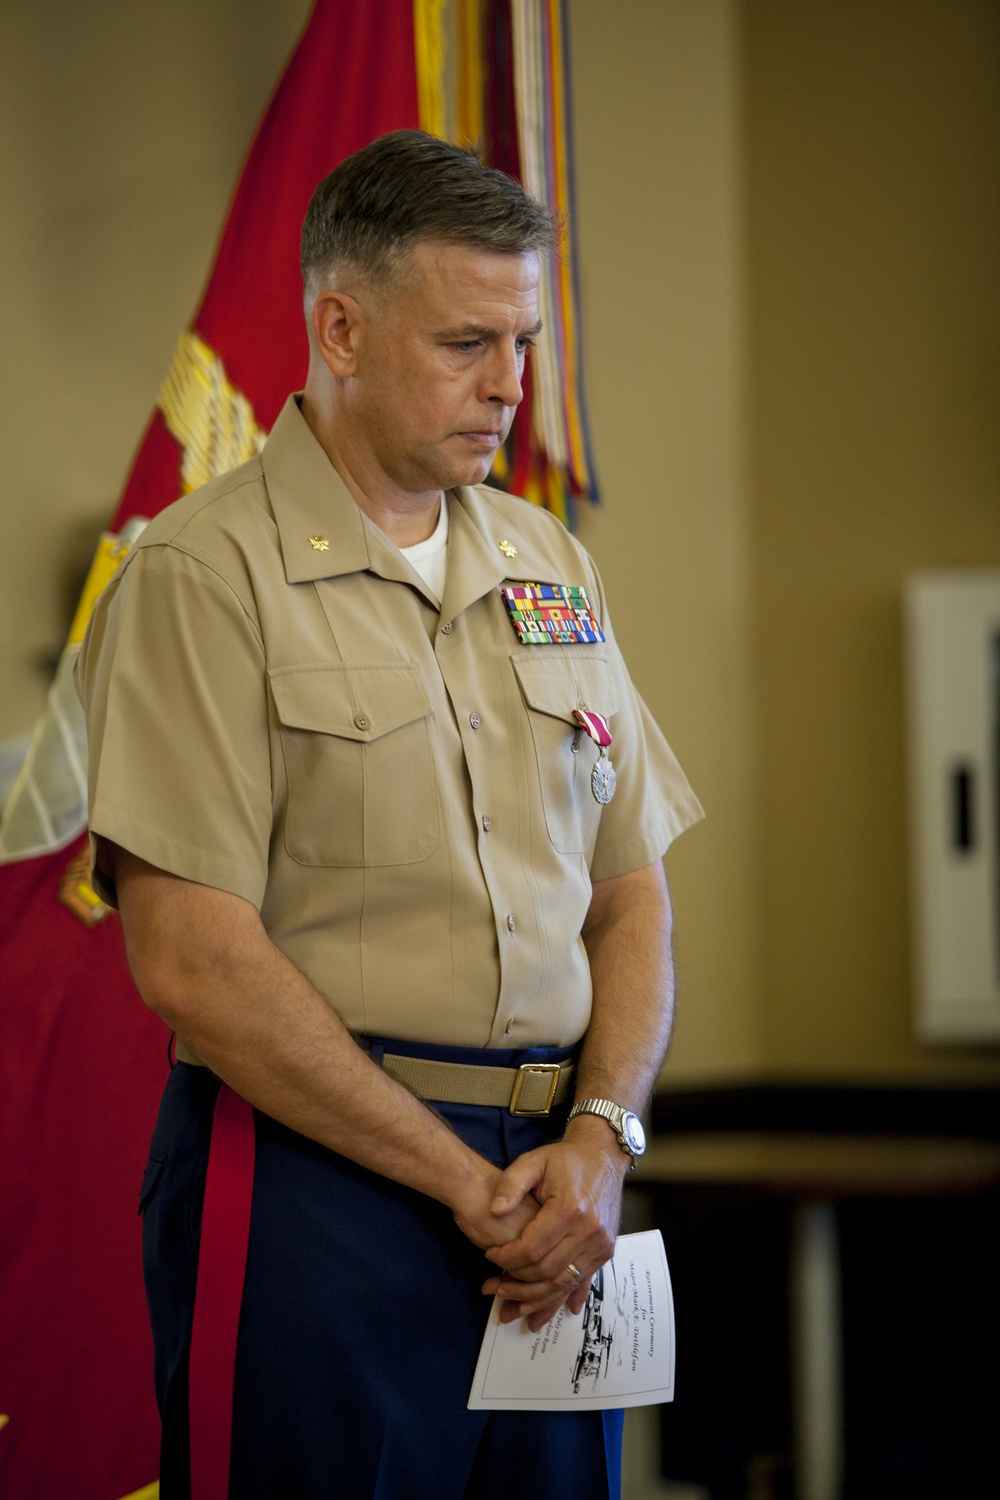 Major Mark Dethlefsen Retirement Ceremony